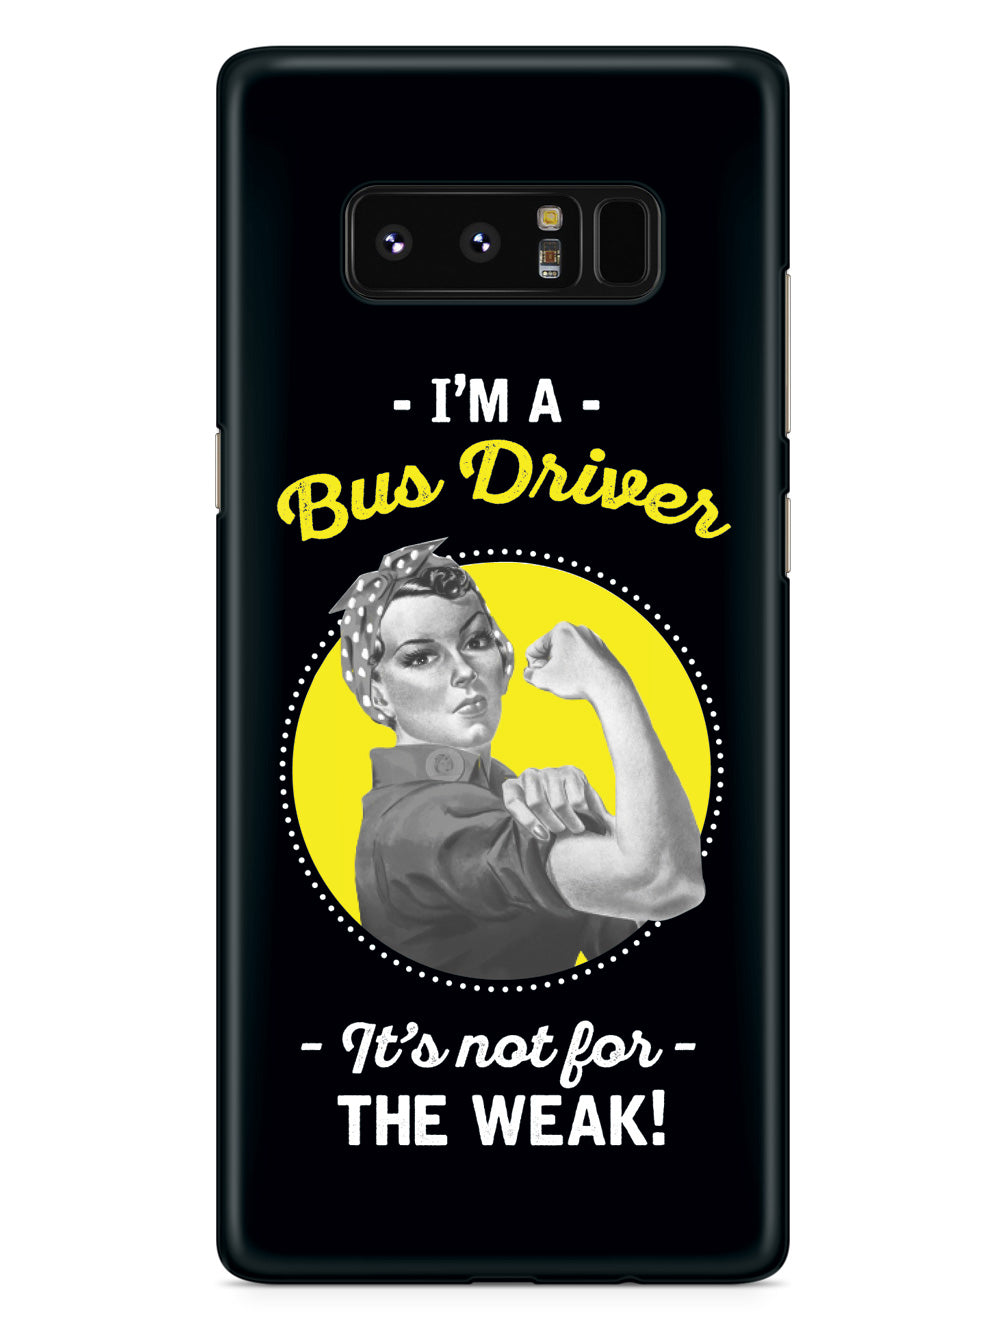 I'm a Bus Driver! Case